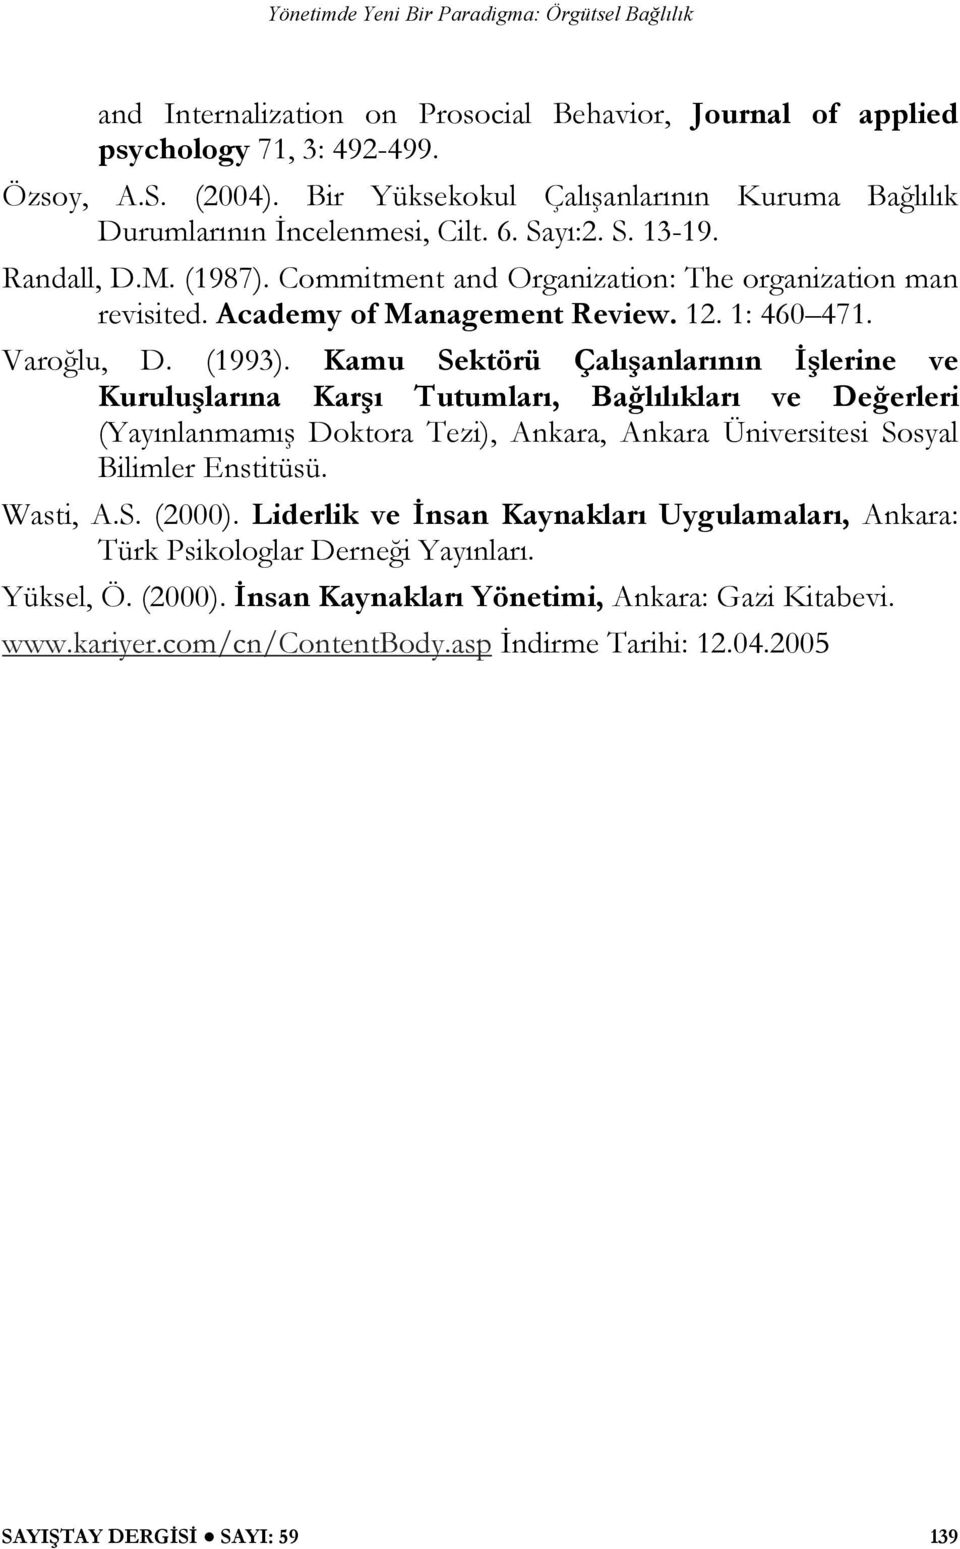 Kamu Sektörü Çalışanlarının İşlerine ve Kuruluşlarına Karşı Tutumları, Bağlılıkları ve Değerleri (Yayınlanmamış Doktora Tezi), Ankara, Ankara Üniversitesi Sosyal Bilimler Enstitüsü. Wasti, A.S. (2000).